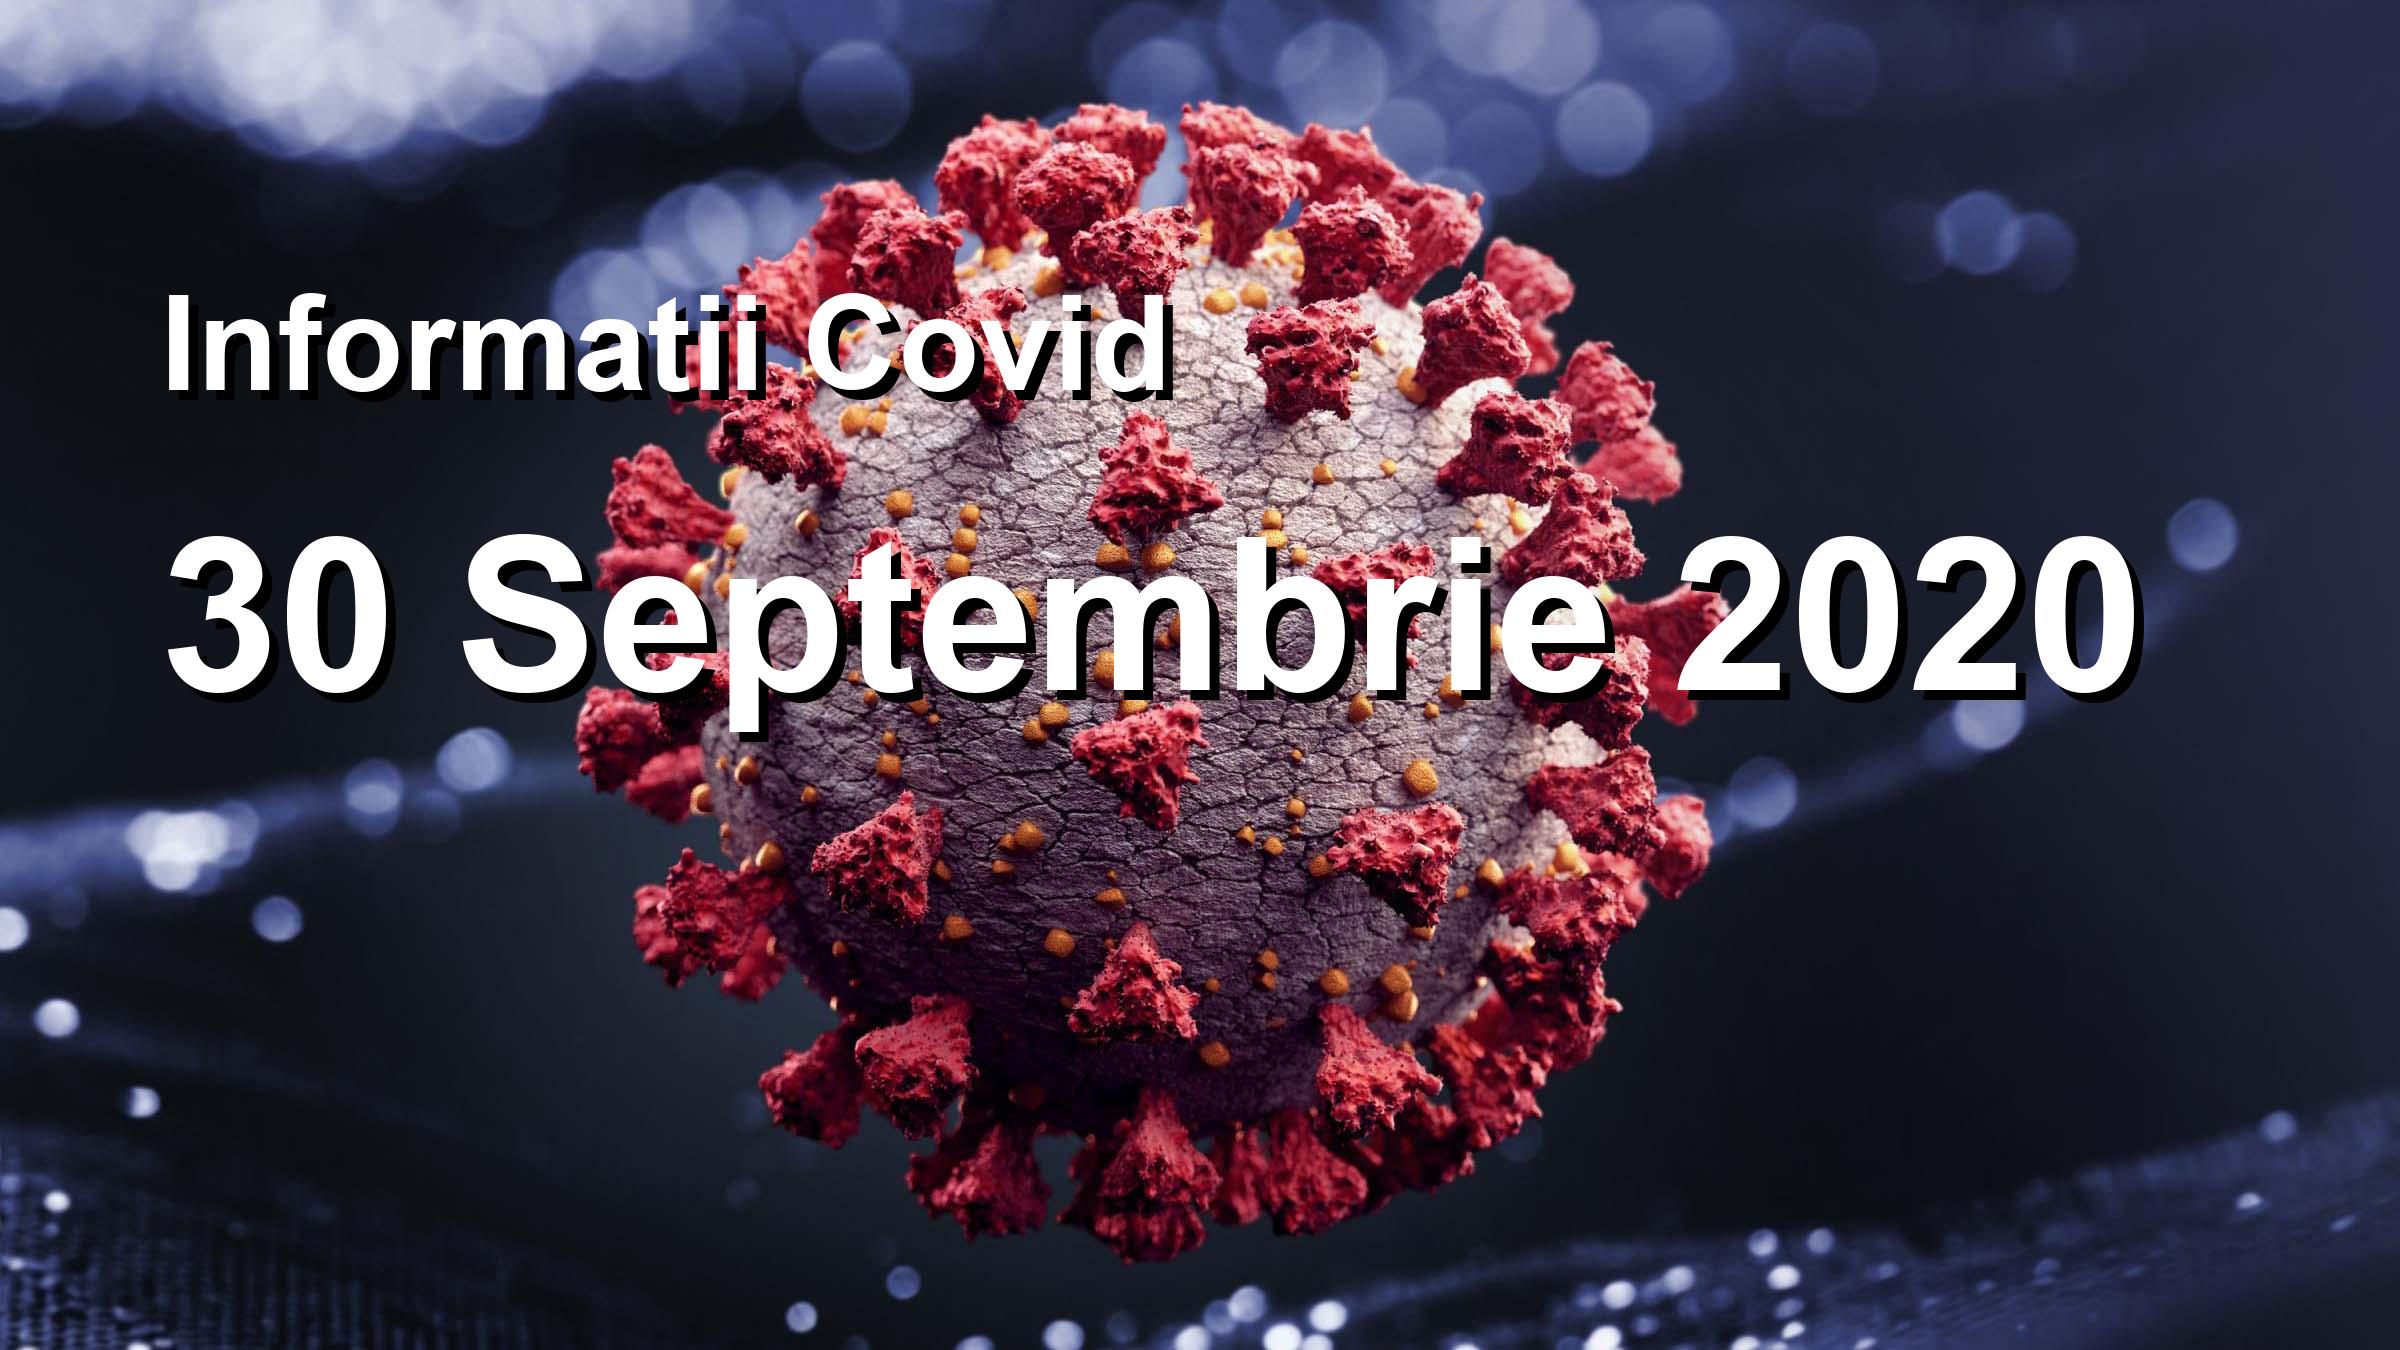 Informatii Covid-19 pentru 30 Septembrie 2020: 2158 infectari, 26021 teste. | Coronavirus Romania